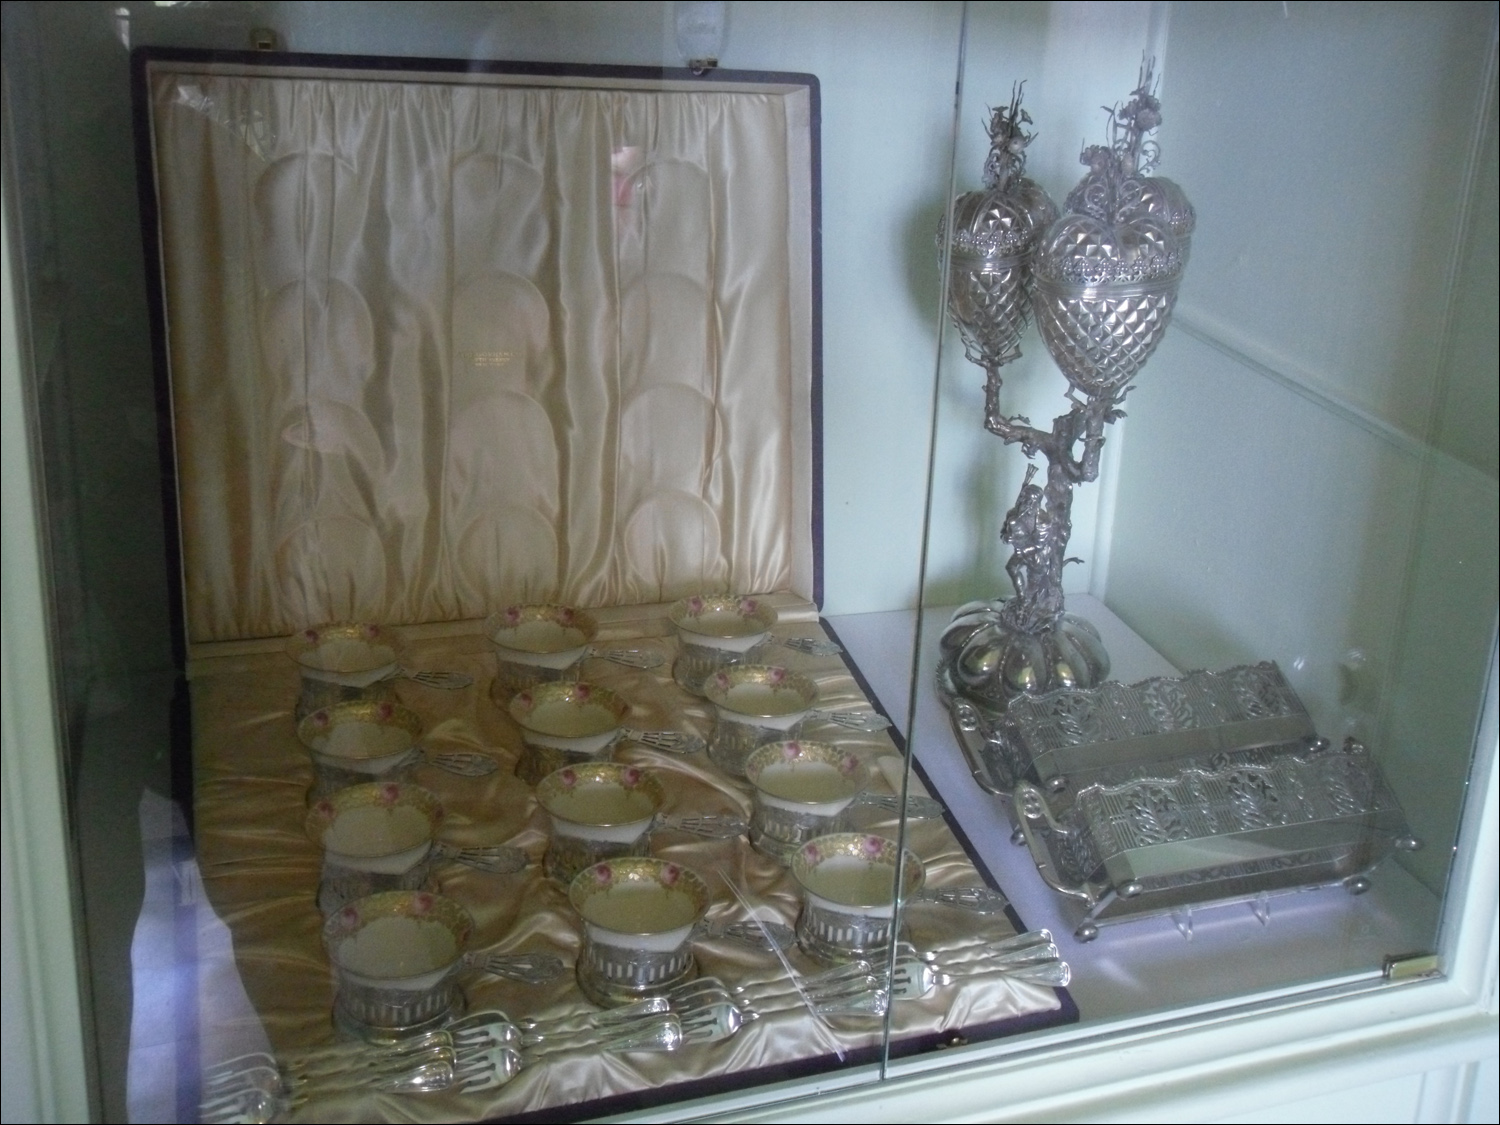 John & Mabel Ringling Museum-Ca' d'Zan mansion-pantry & kitchen areas